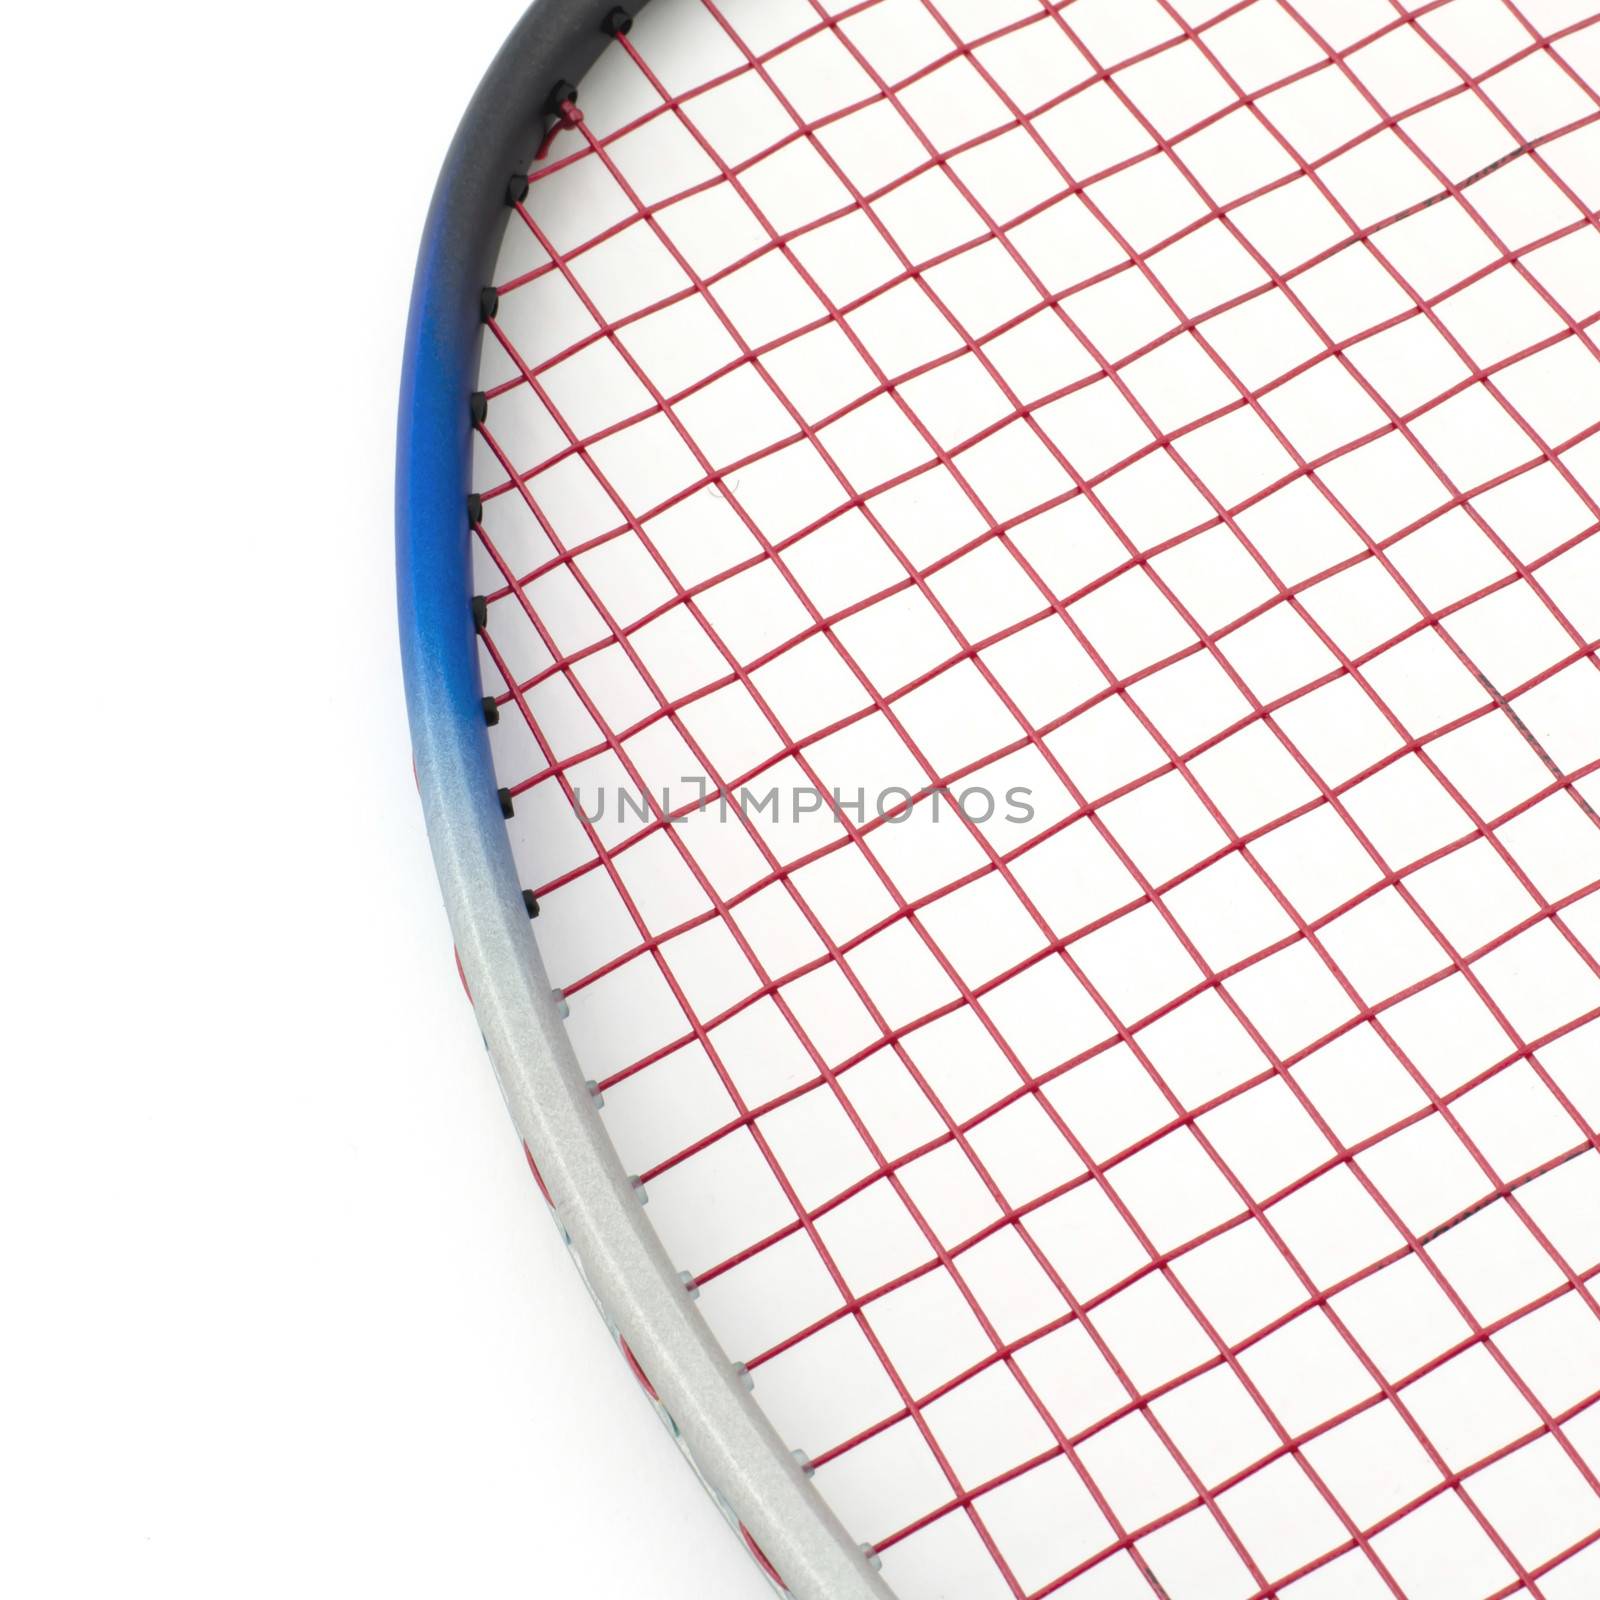 badminton isolated on white background